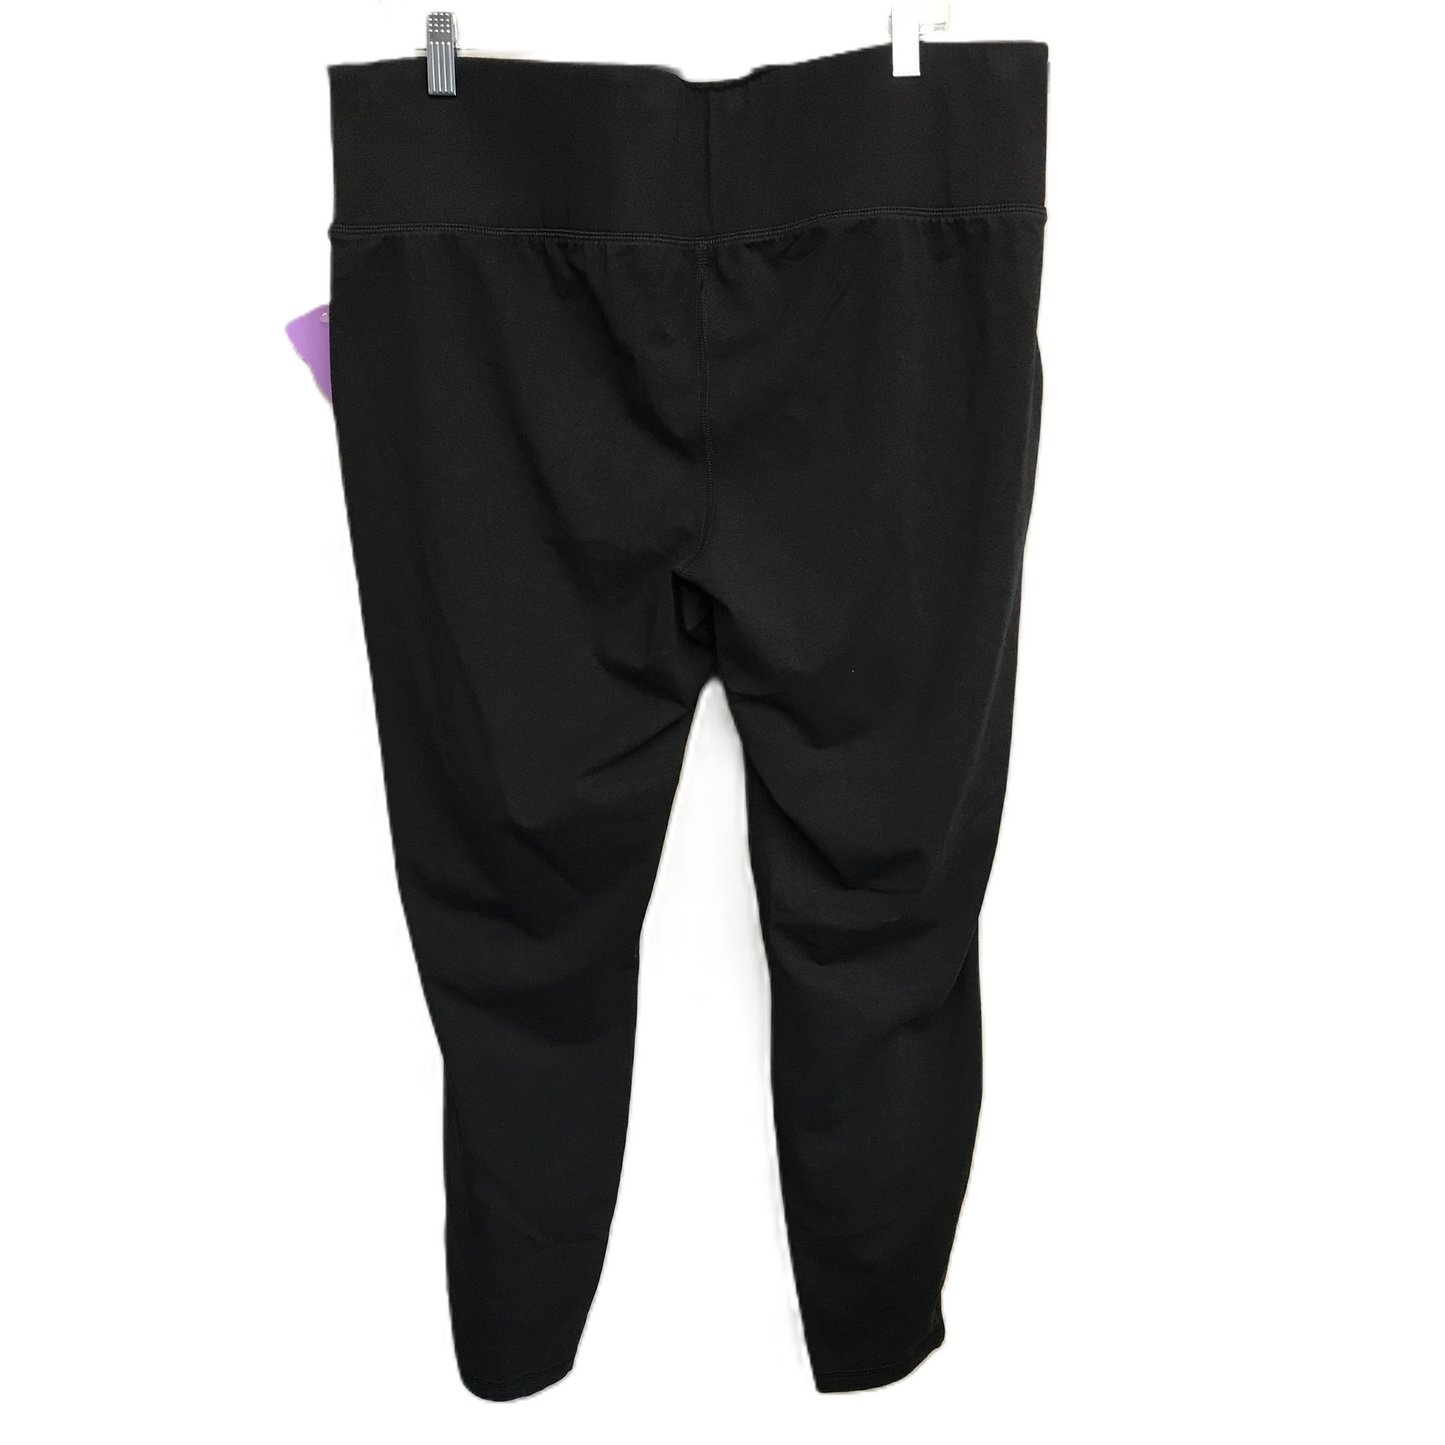 Black Pants Leggings By Livi Active, Size: 3x